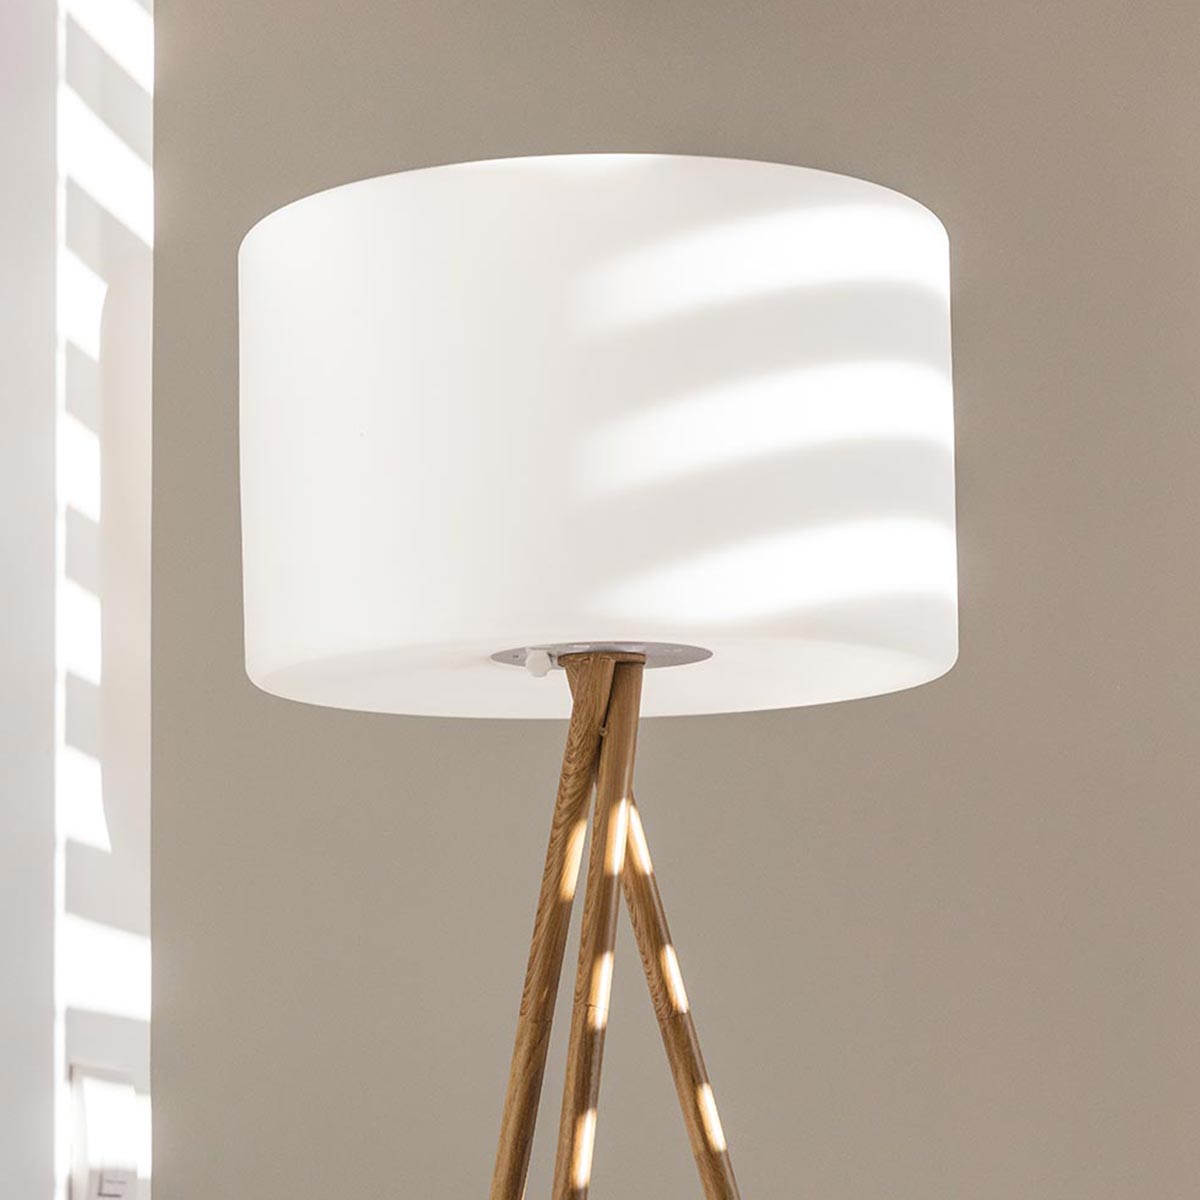 Lampadaire ou Lampe De Table Design Moderne Led De Couleur